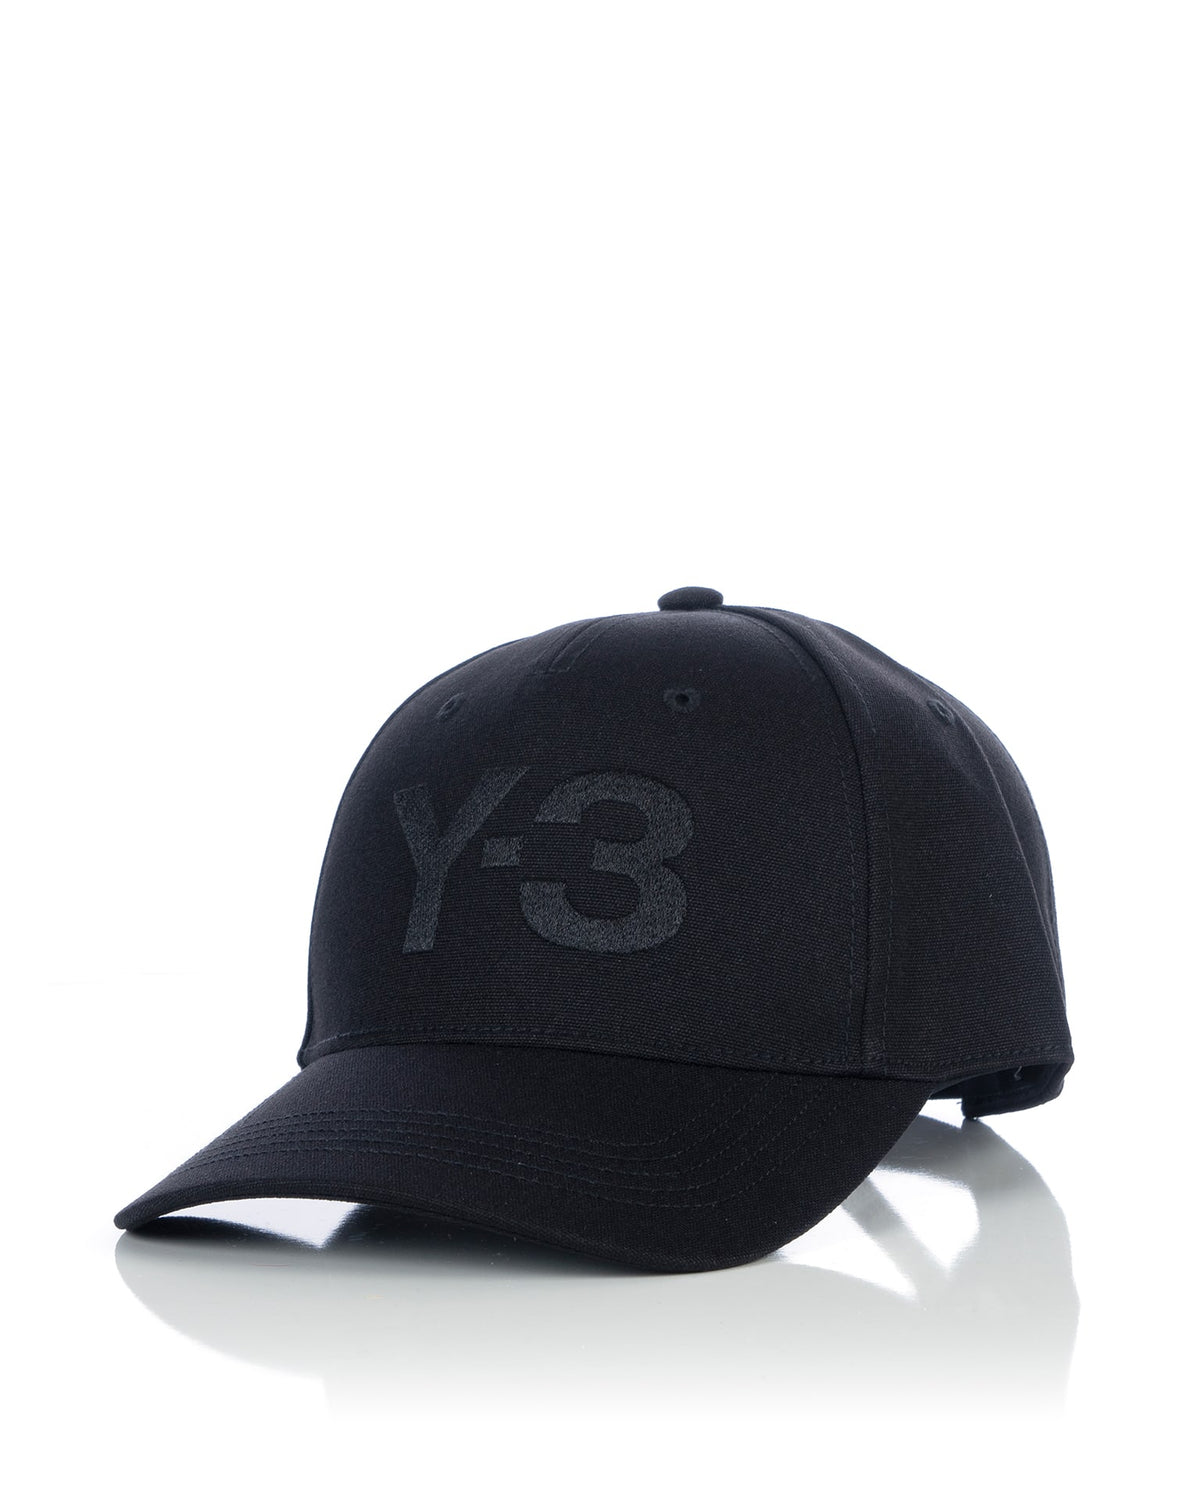 adidas Y-3 | Logo Cap Black - IY0104 - Concrete